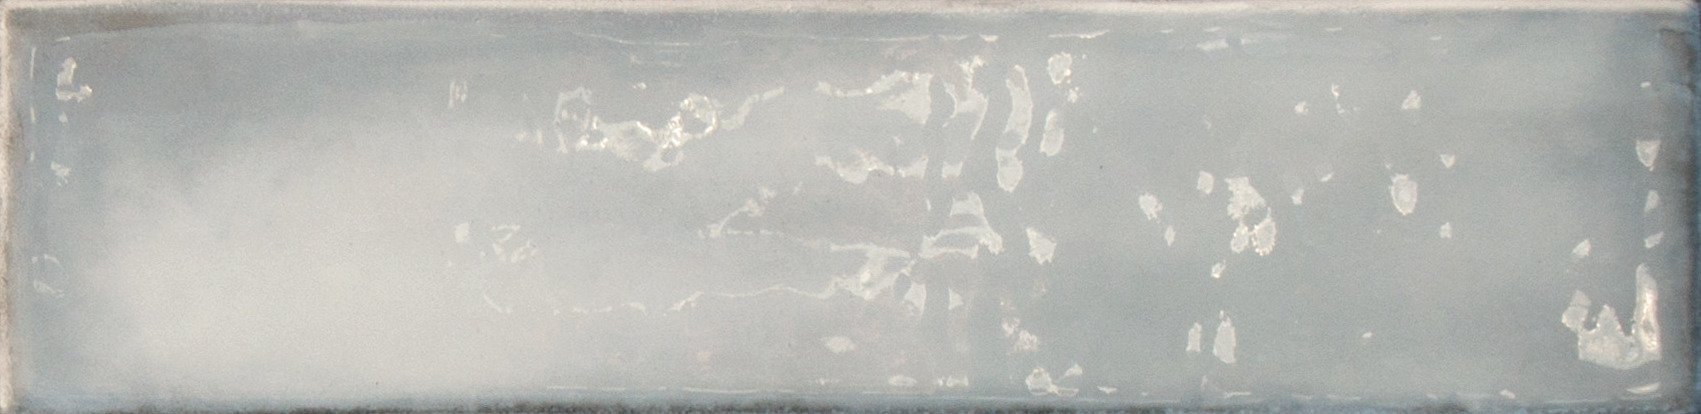 Керамическая плитка Self Style Cloud Gray, цвет серый, поверхность глянцевая, под кирпич, 75x300